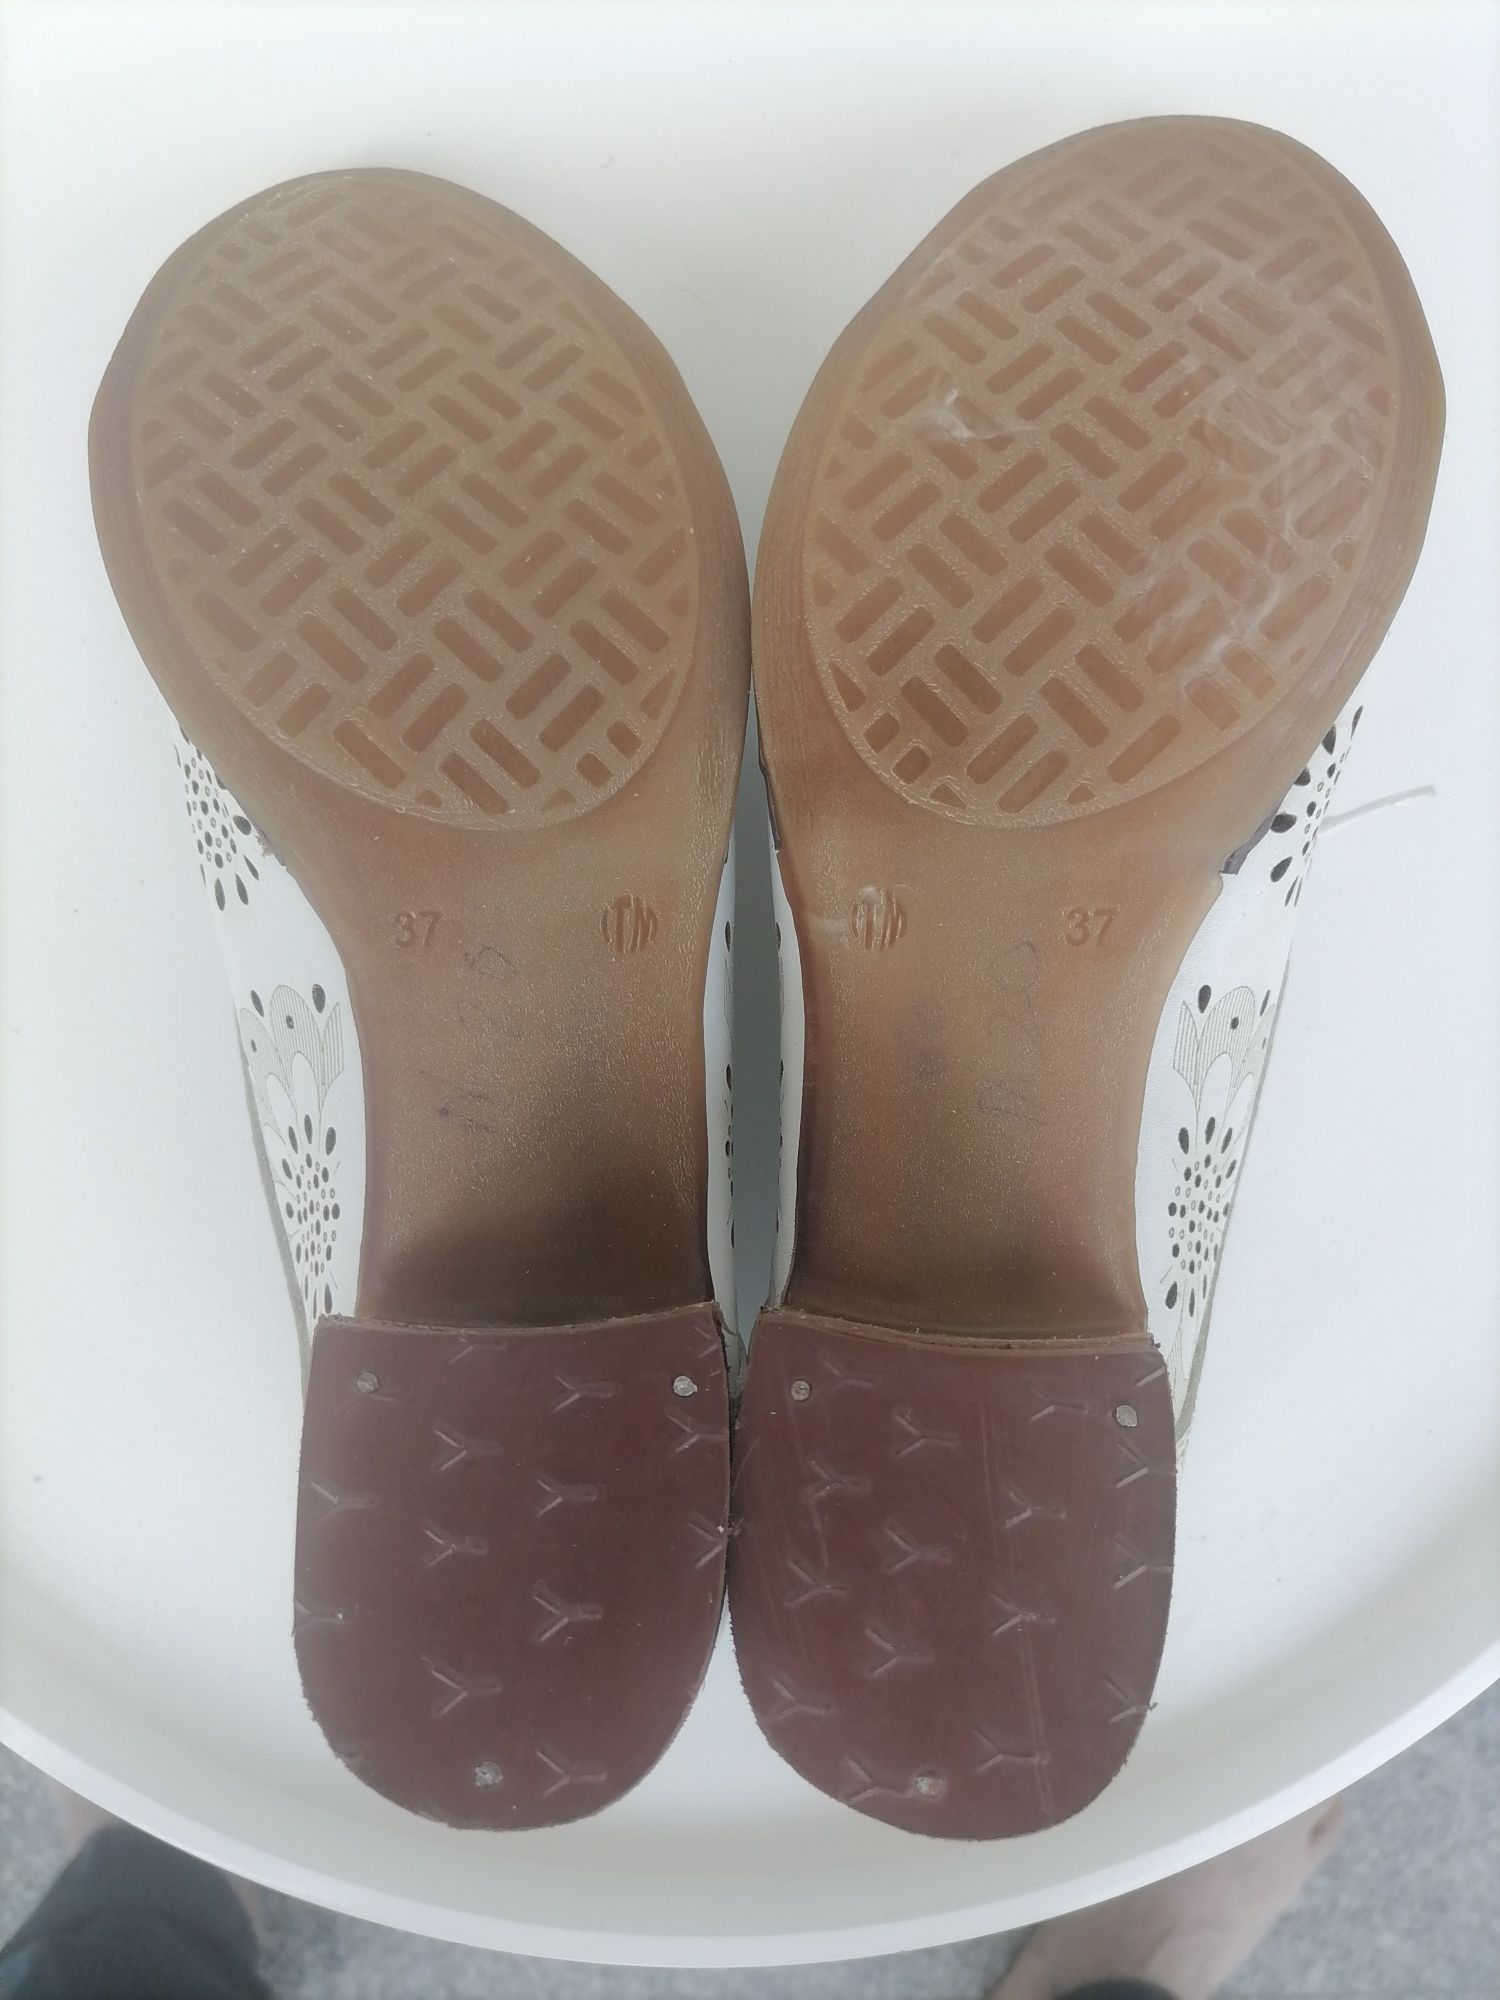 Pantofi dama OSSO, piele naturala, mărimea 37,culoare alb-crem.